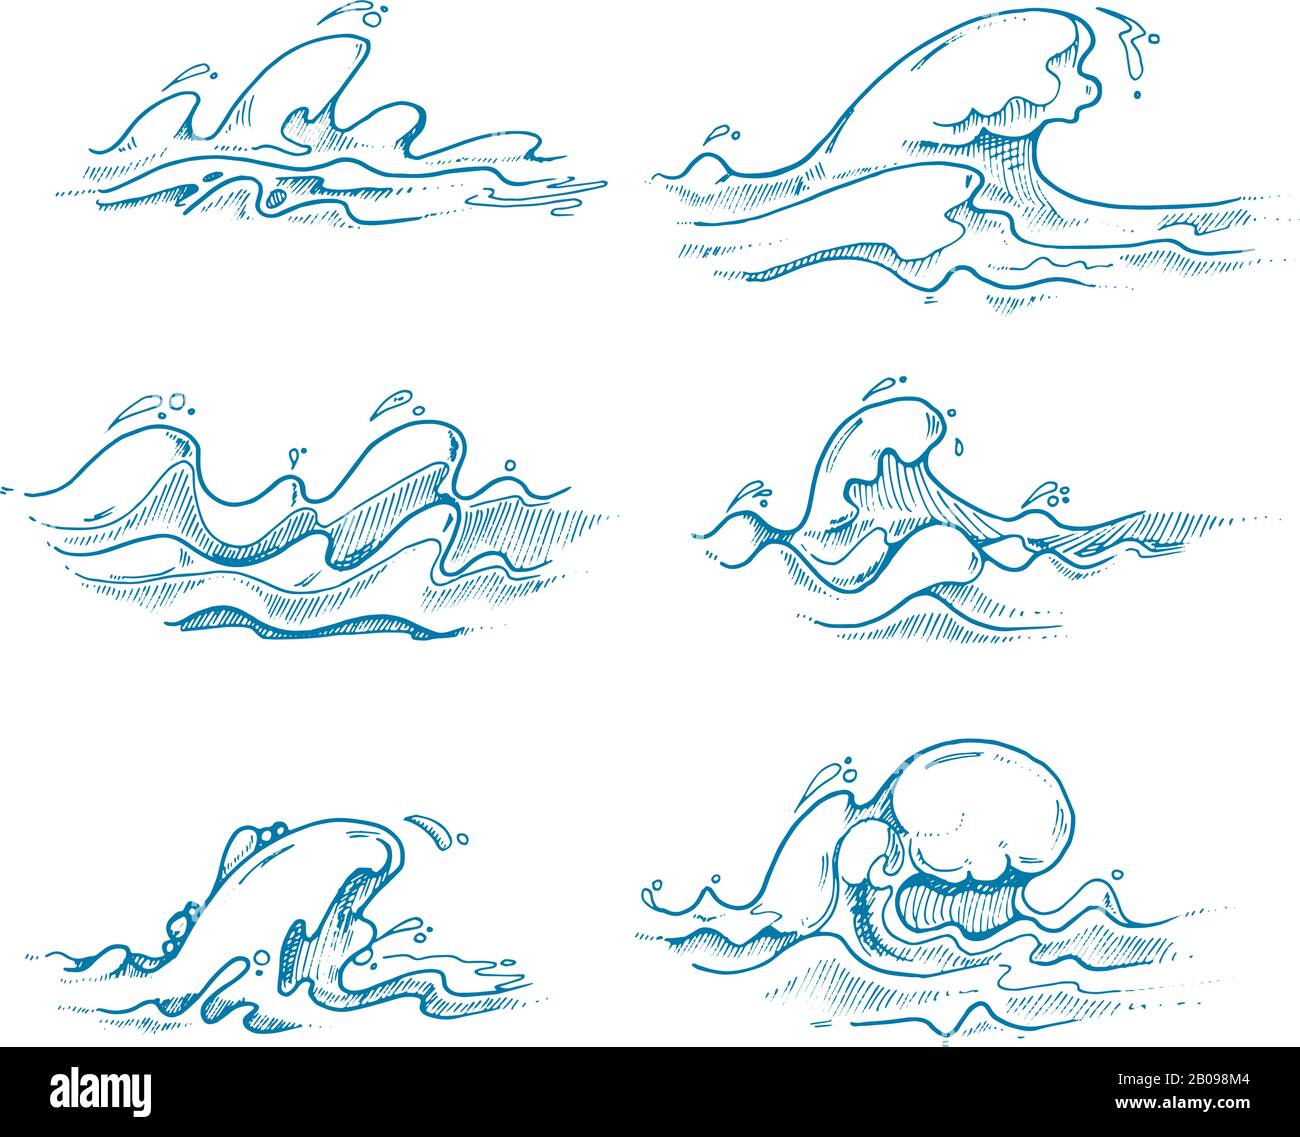 Vektor der alten Meereswellen in handgezeichneter, Skizze und Doodle-Stil. Wellenwasser Ozean, mit wirbelnden Wellen. Vektorgrafiken Stock Vektor